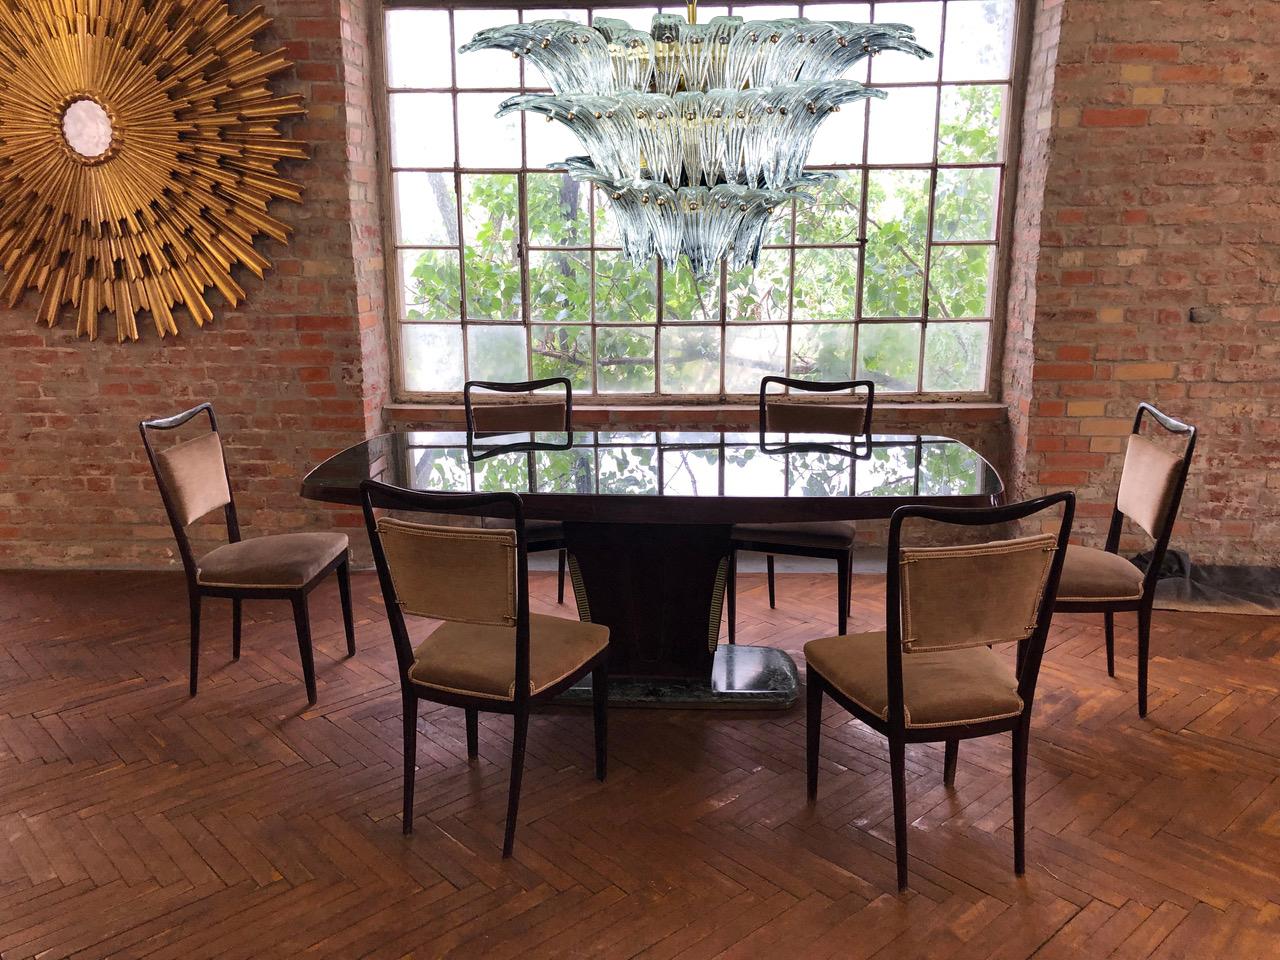 Paire de luxueux lustres en verre de Murano Palmette réalisés avec 94 verres en cristal originaux attribués à Barovier & Toso.
Cadre en métal doré.
Disponible également une paire et une paire d'appliques.
12 ampoules, dimension E27
Dimensions :